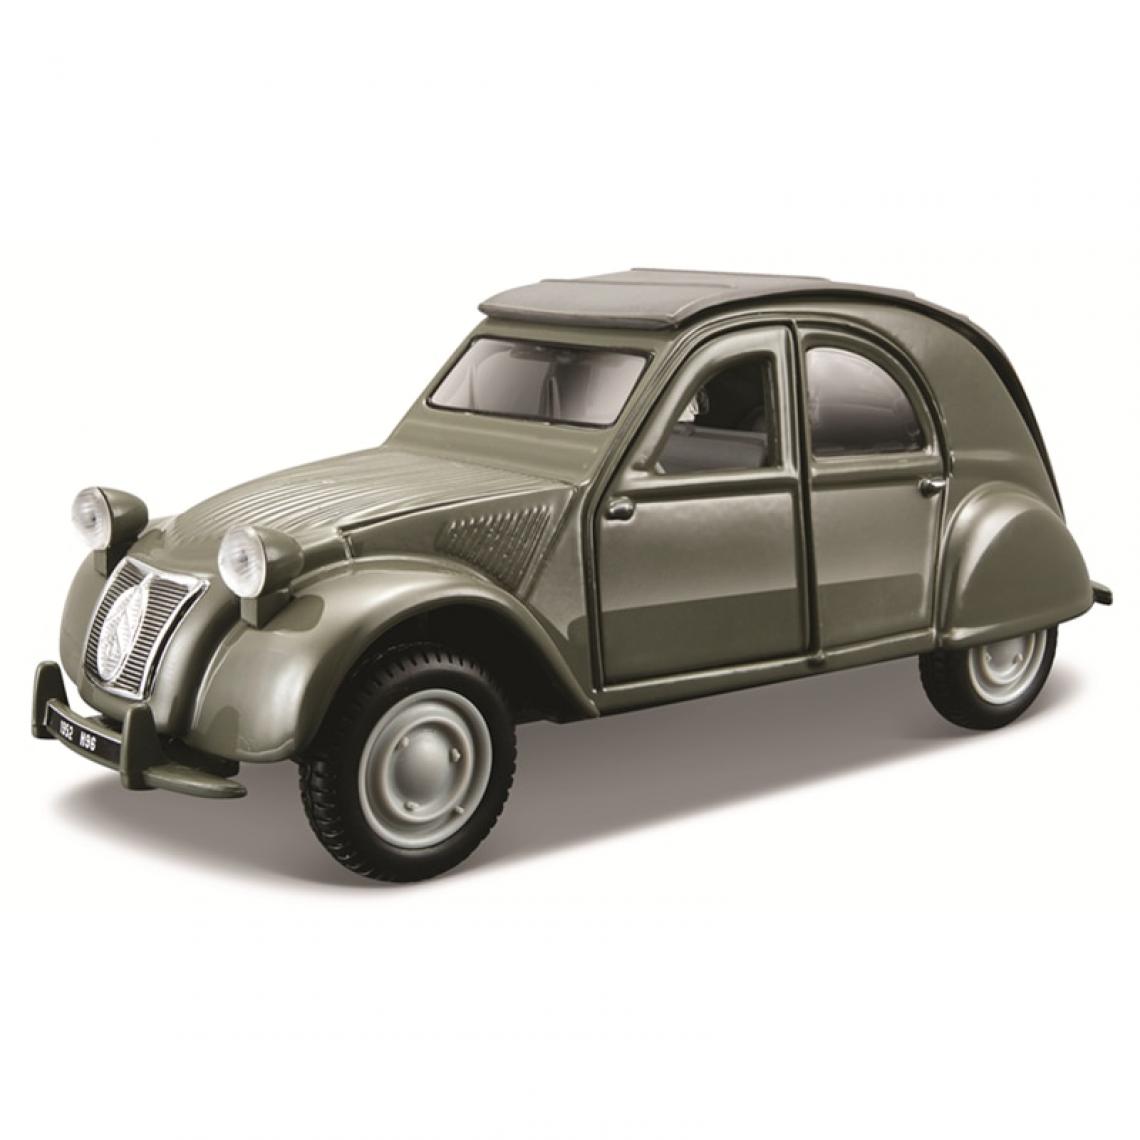 Universal - 1: 32 Échelle 1952 Citroën 2CV Alliage Luxury Car Moulding Model Toy Collection Cadeau(Vert) - Voitures